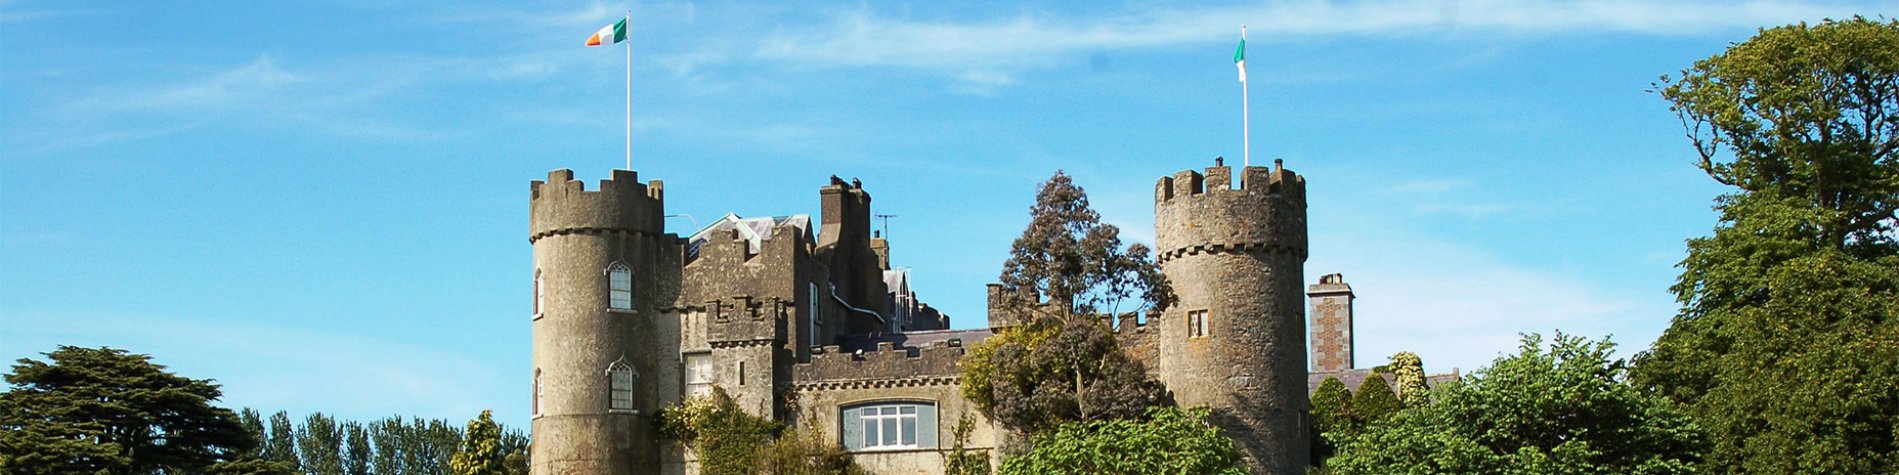 Malahide Castle